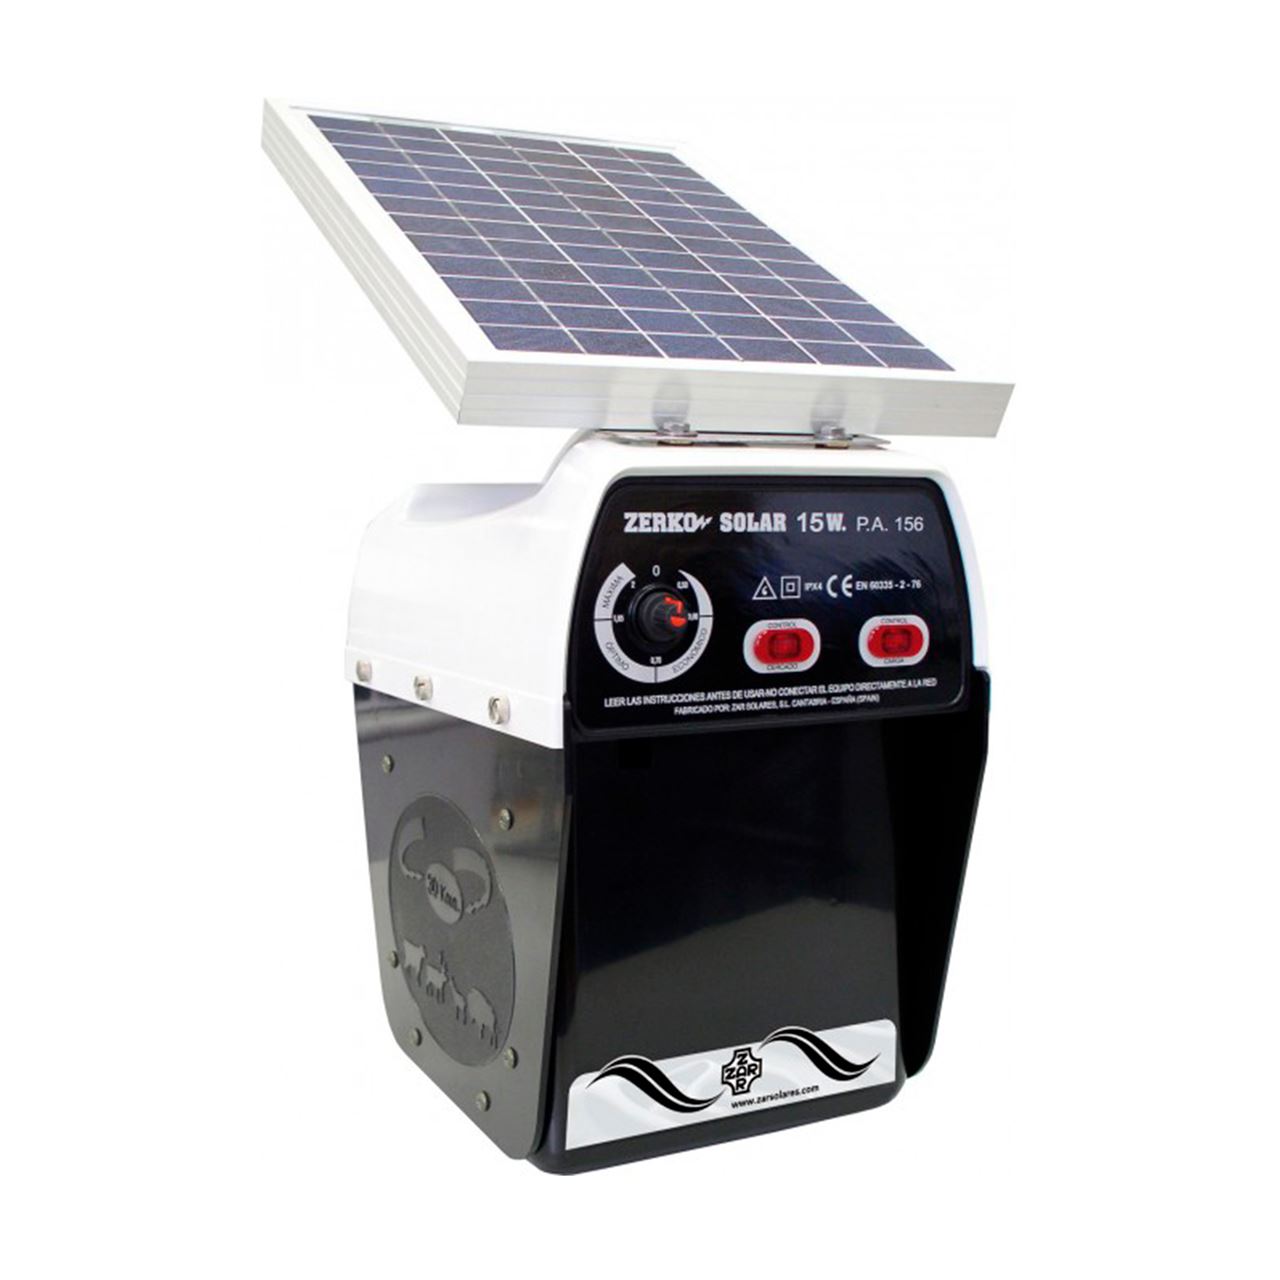 COR381142. Pastor Electrico Solar